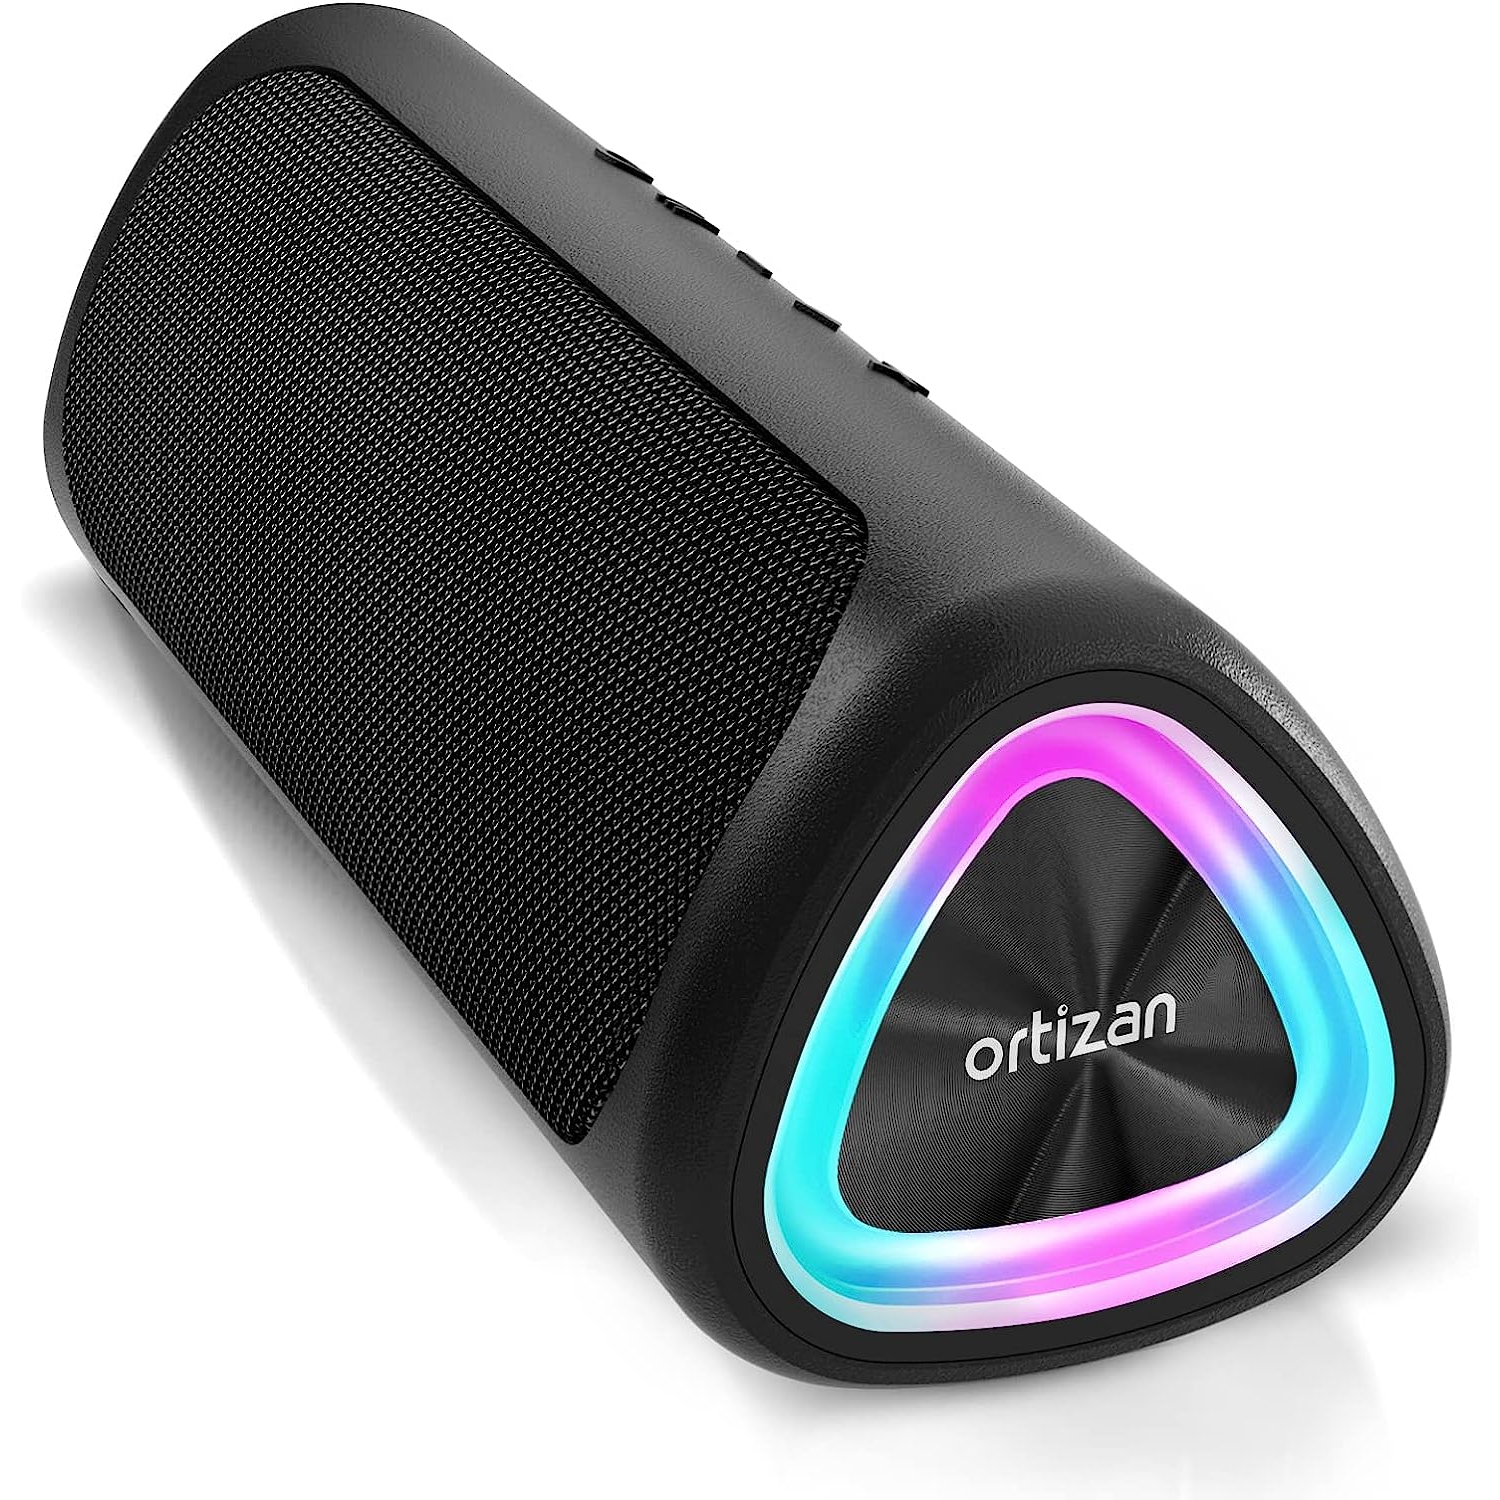 CORN Shower Bluetooth Speaker, IPX7 Waterproof Portable Floating Speaker  with Loud HD Sound, True Wireless Stereo